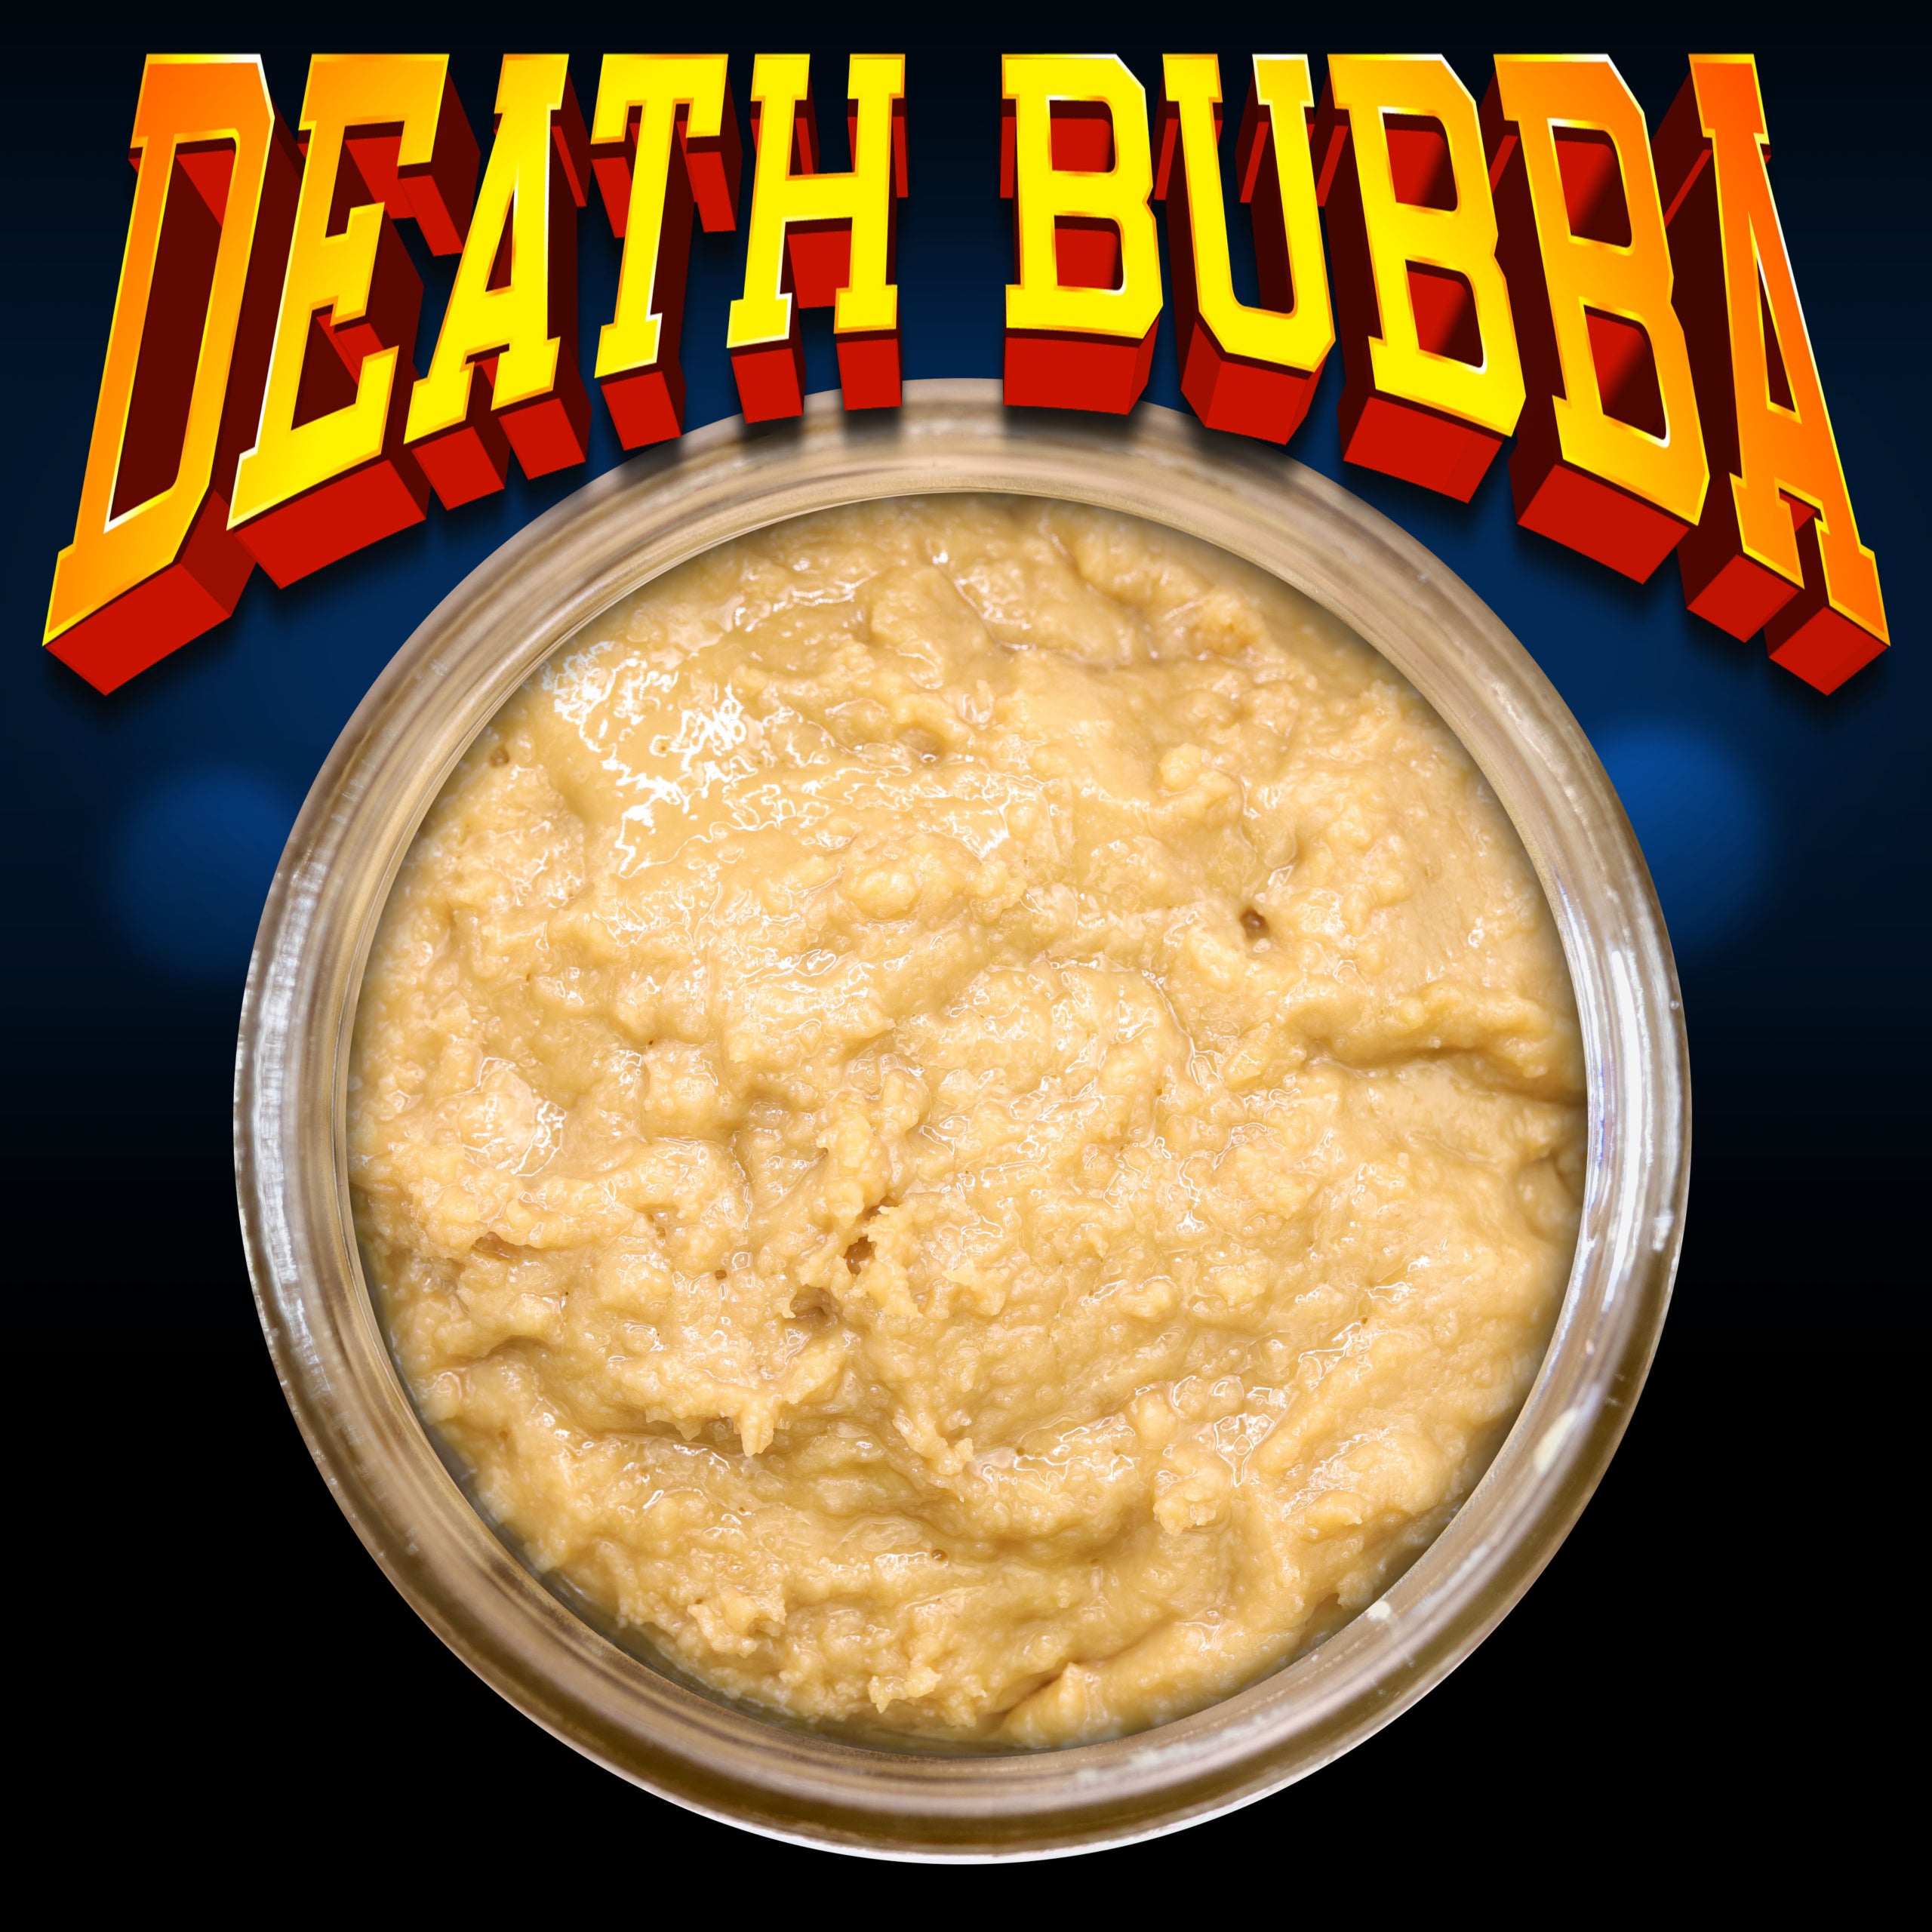 Death Bubba